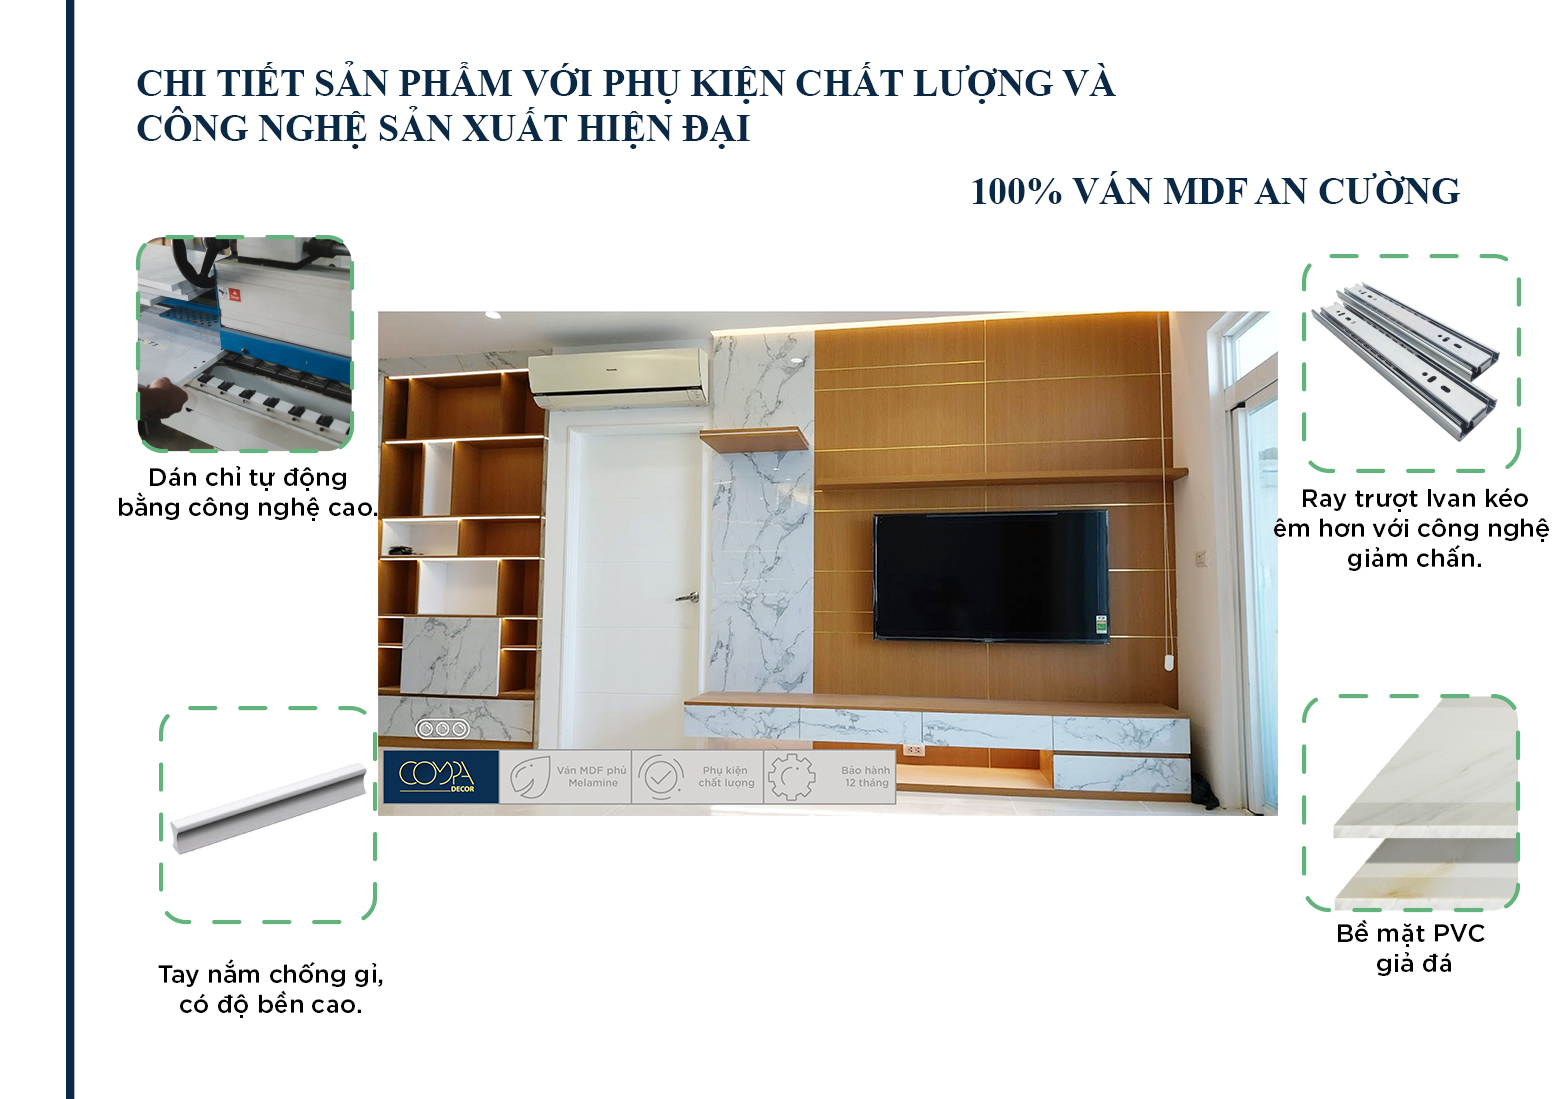 Hình ảnh thi công thực tế nội thất phòng khách căn hộ 90m2 với chi tiết kĩ thuật